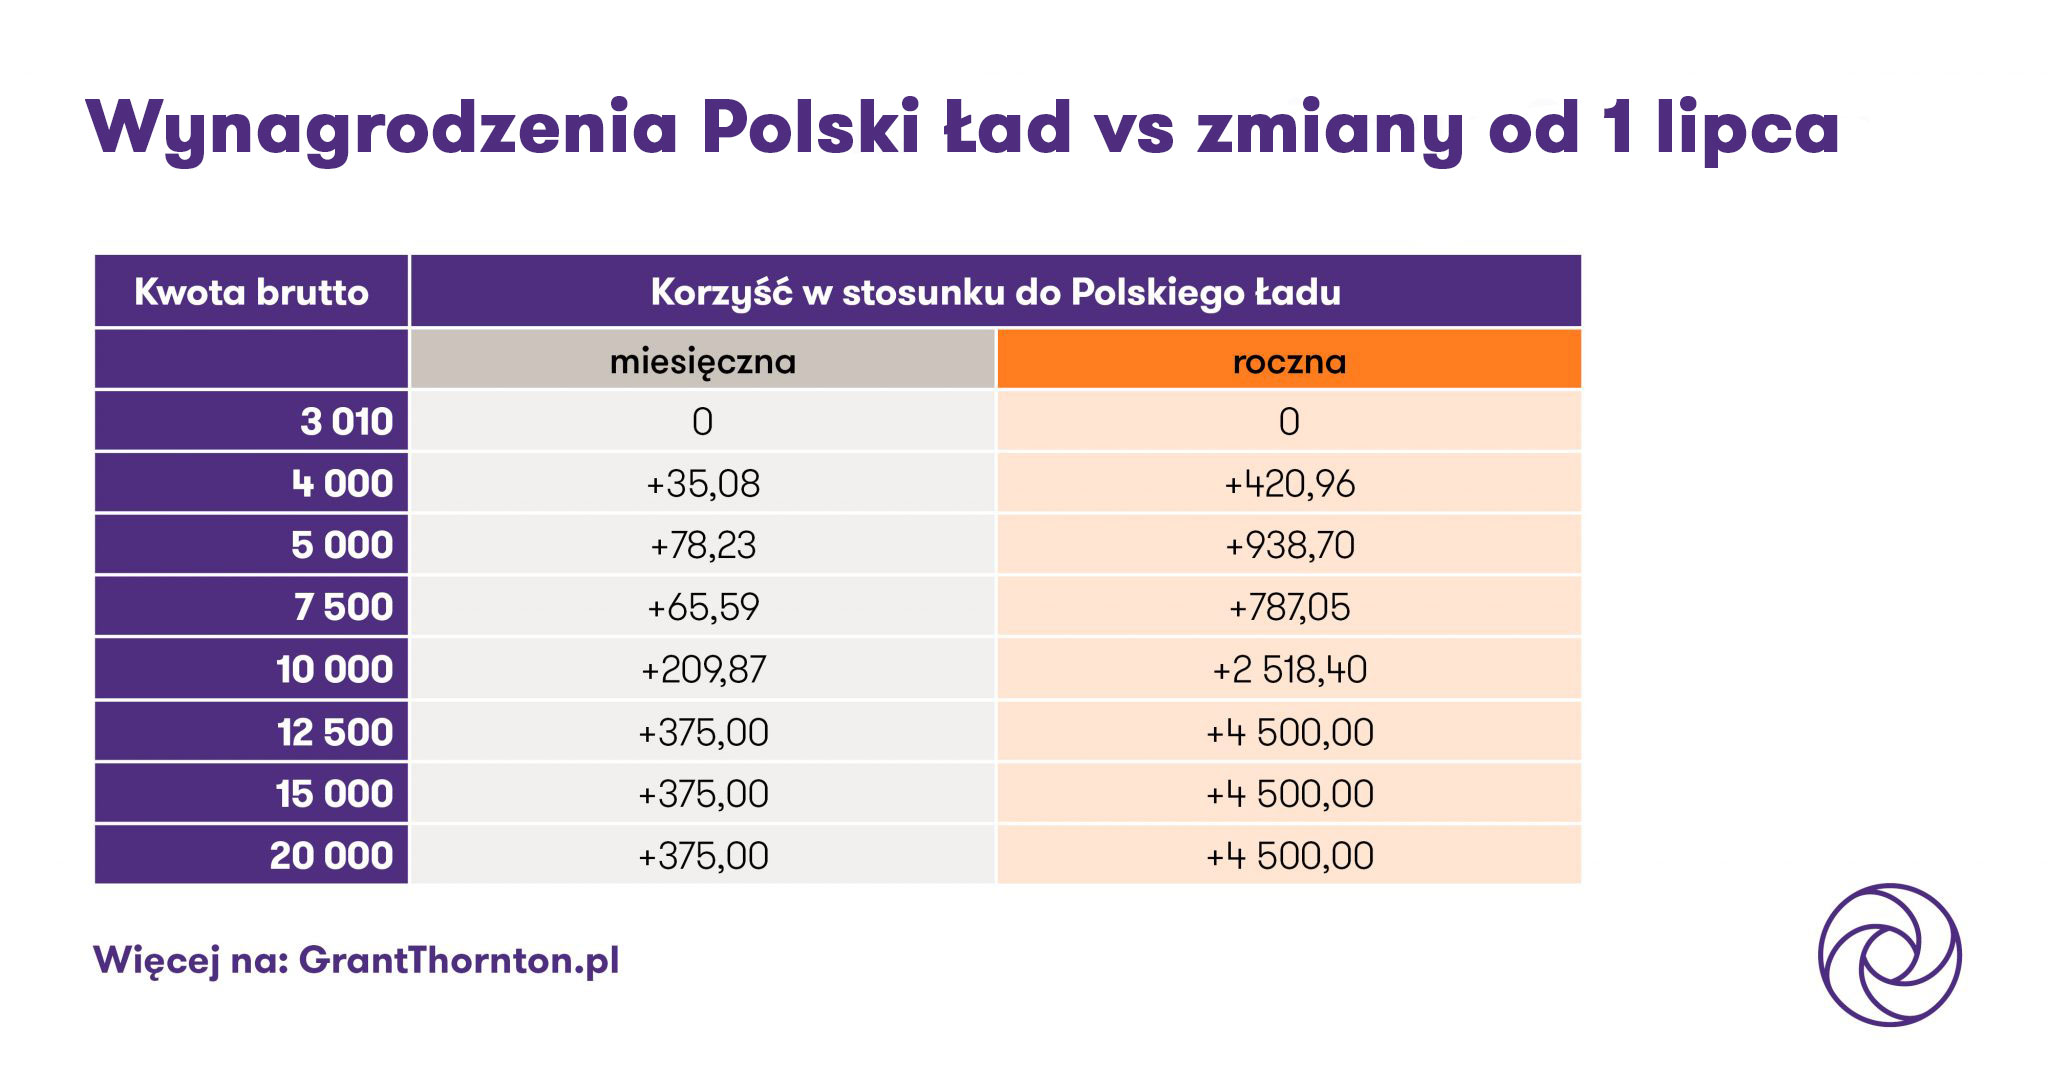 wynagrodzenia: polski lad vs zmiany od 1 lipcaa_korzysc w stosunku do polskiego ladu